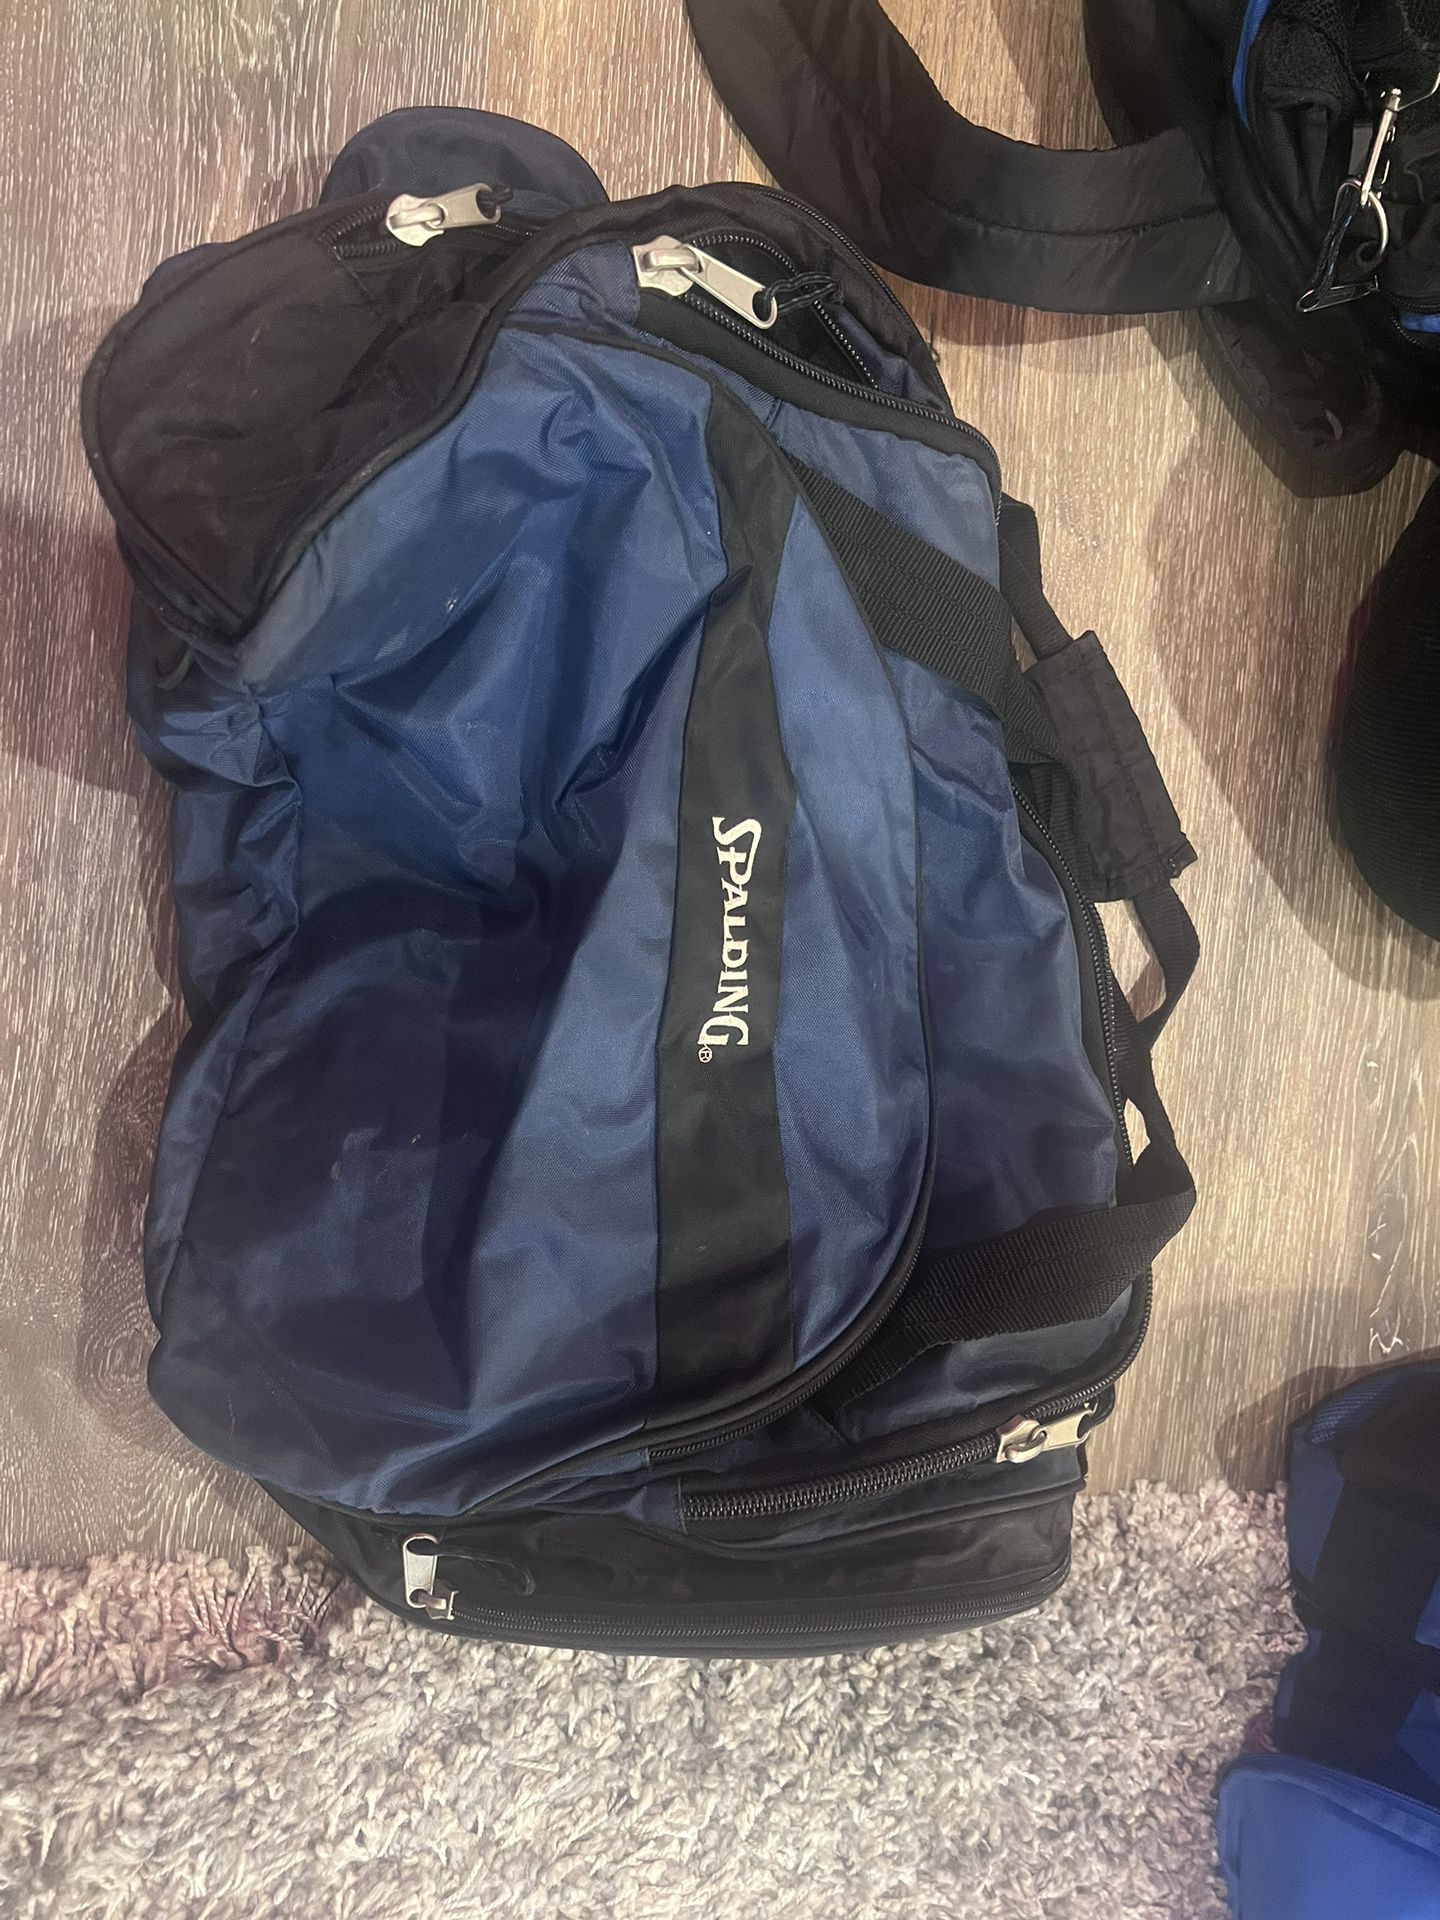 Spaulding Navy Blue Duffle Bag Large 